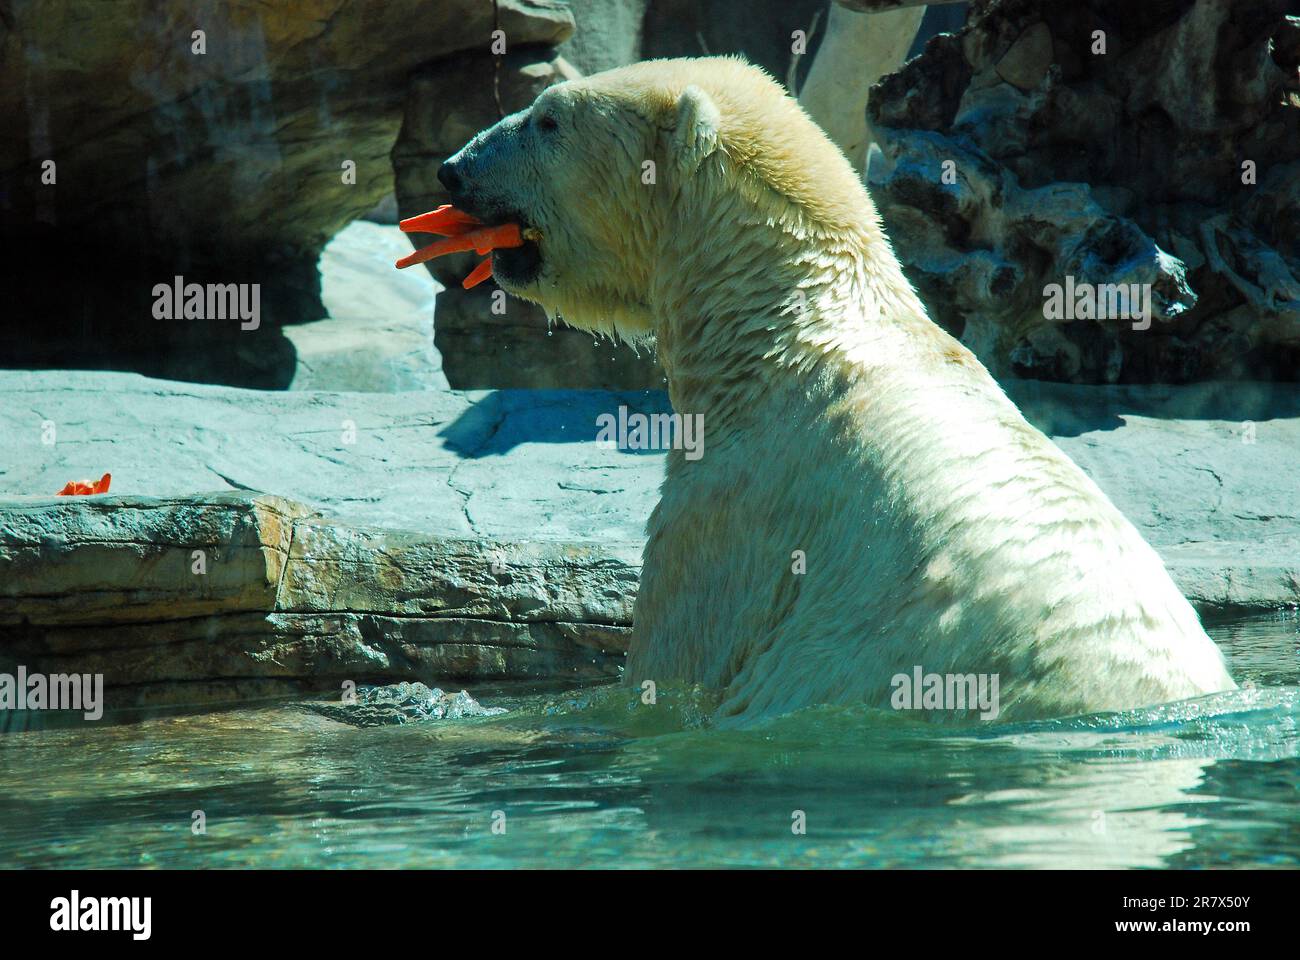 Ein Eisbär schnappt sich einen Mund voll Karotten für einen Snack in seinem Mund in einem Zoo Stockfoto